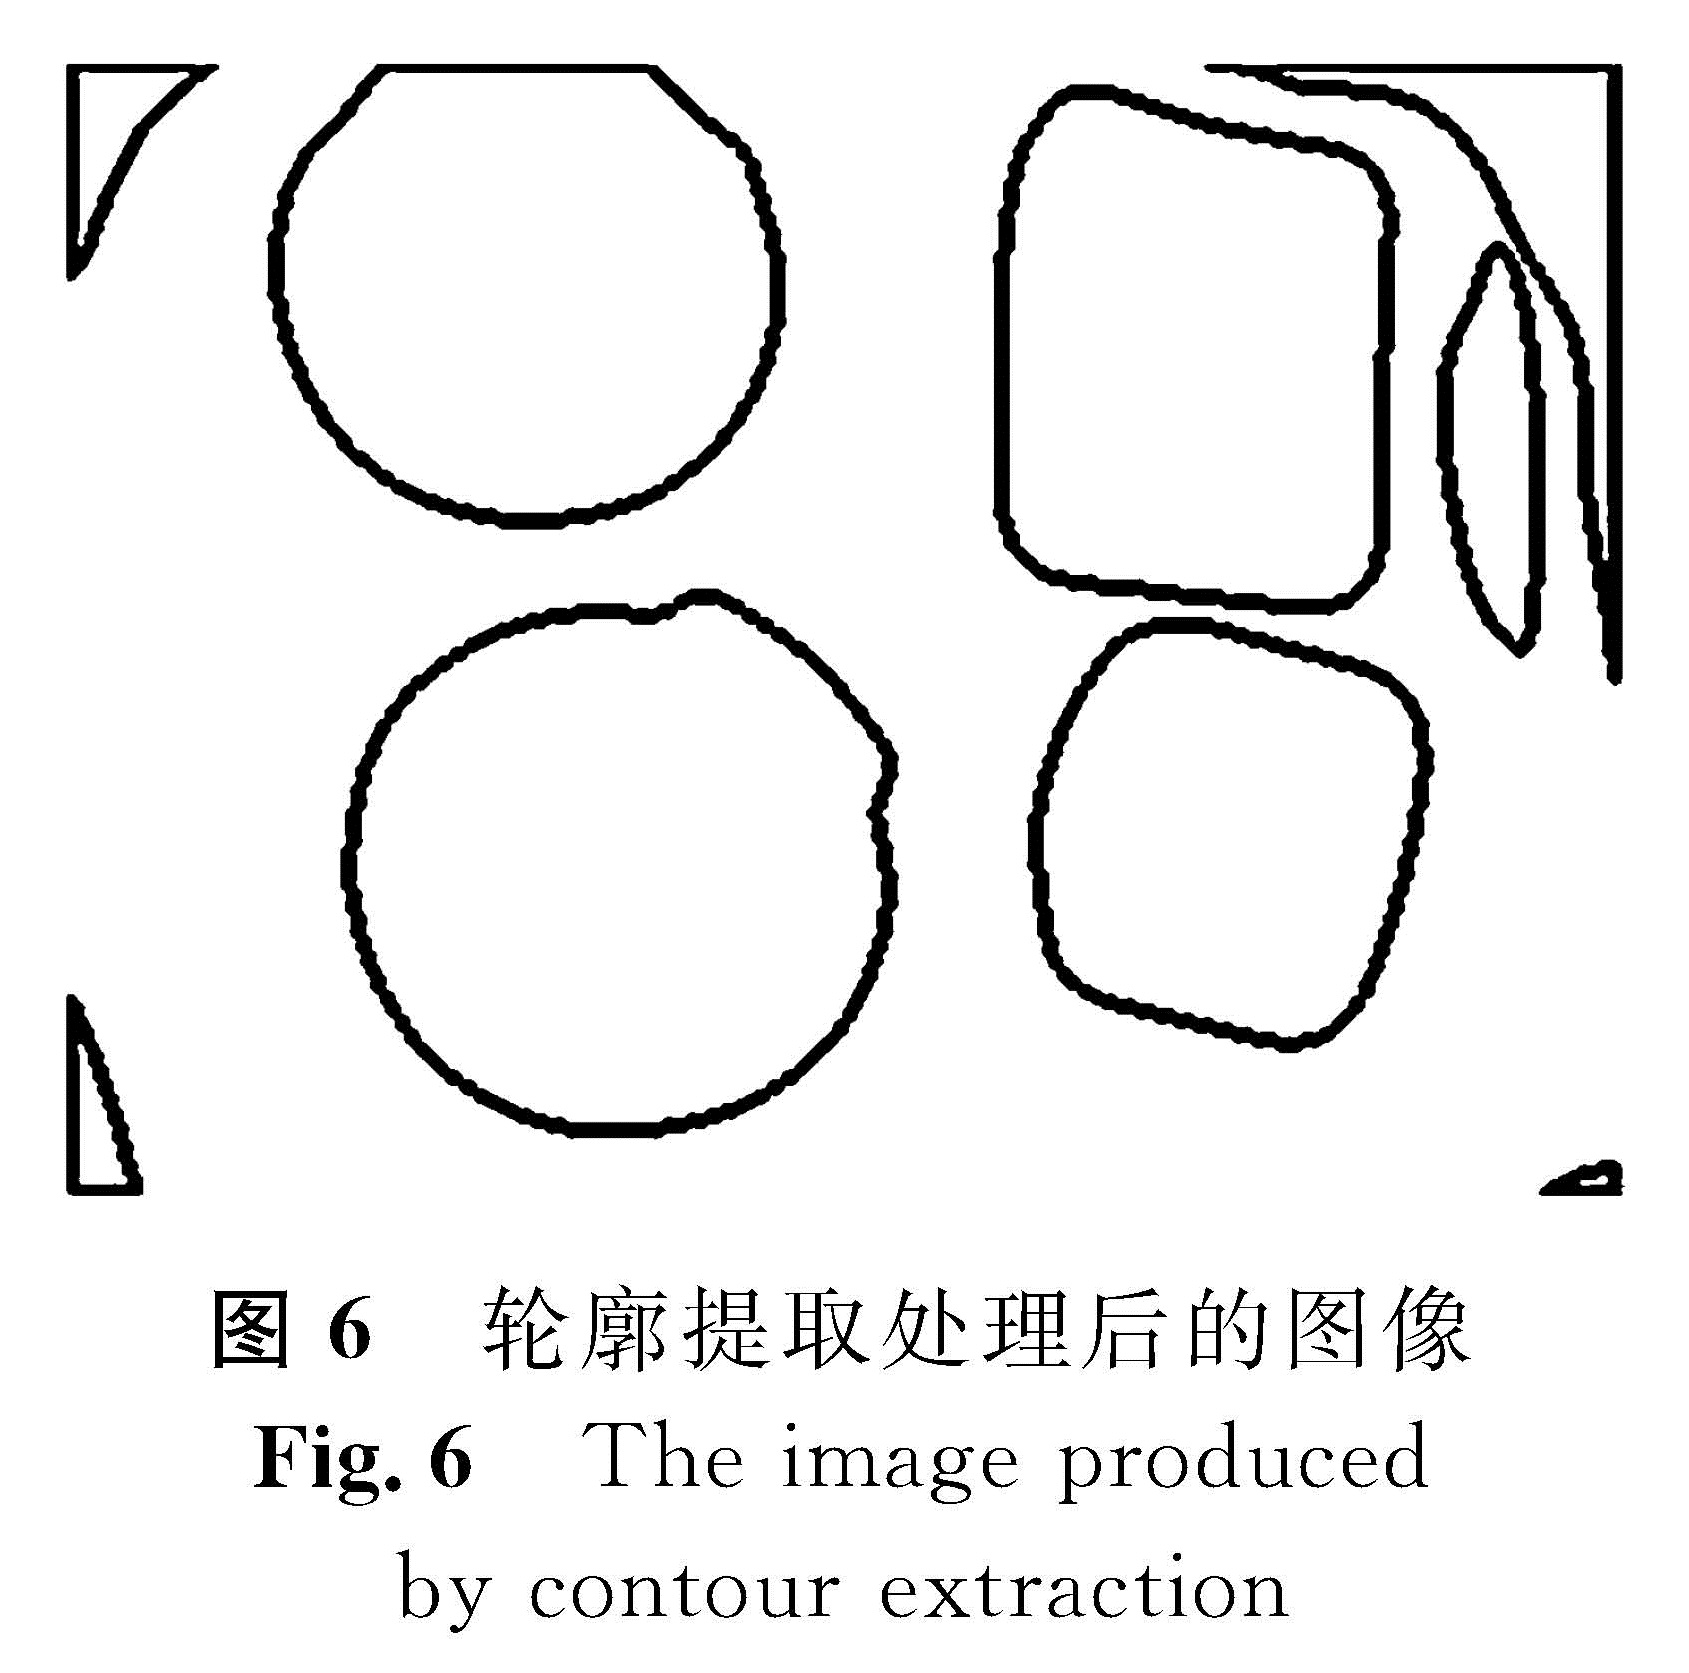 图6 轮廓提取处理后的图像<br/>Fig.6 The image produced by contour extraction